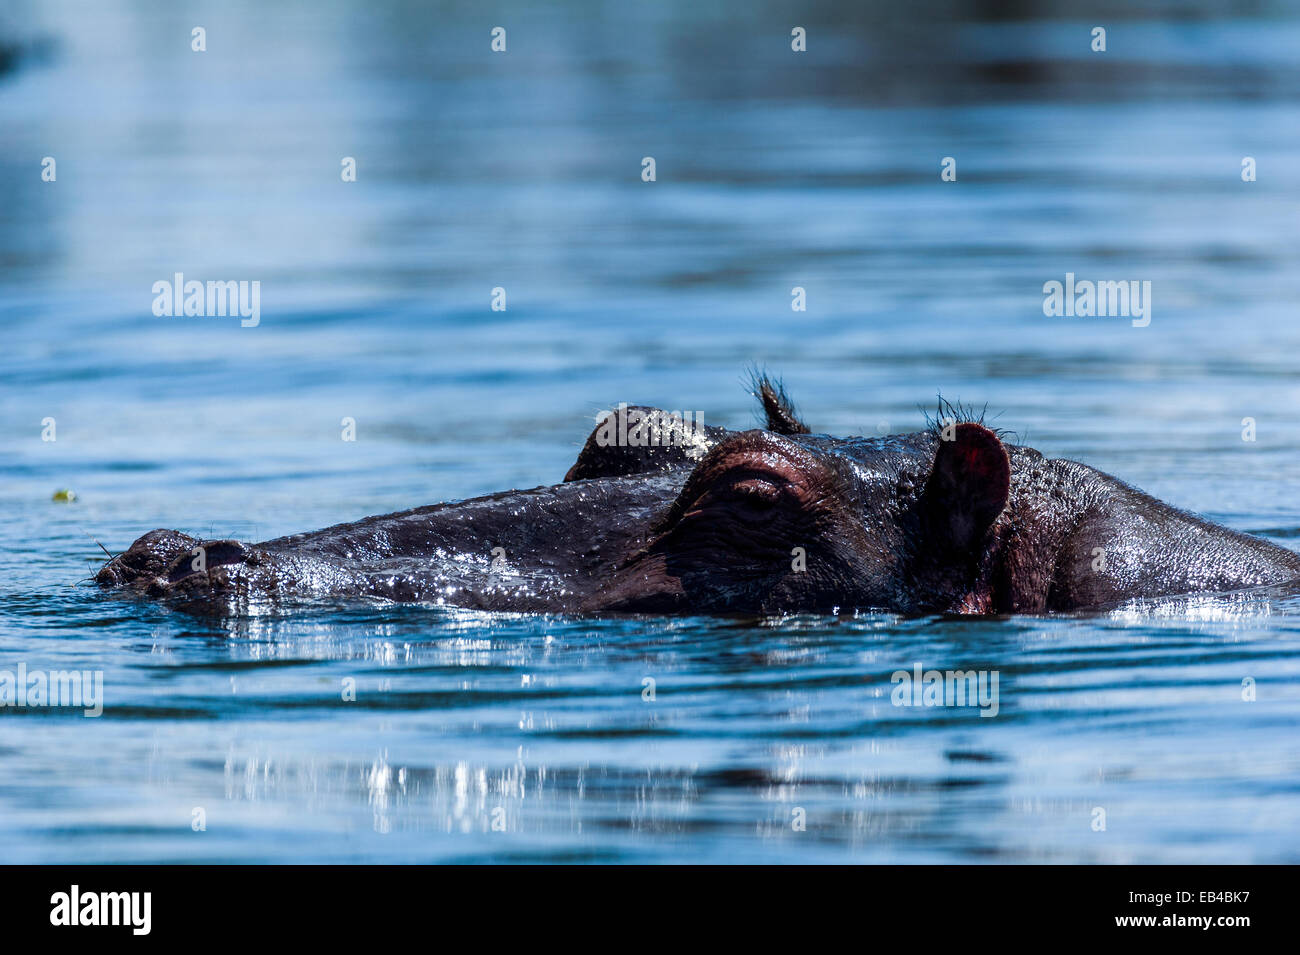 Un hippopotame du Nil nageant à la surface d'un lac Naivasha. Banque D'Images